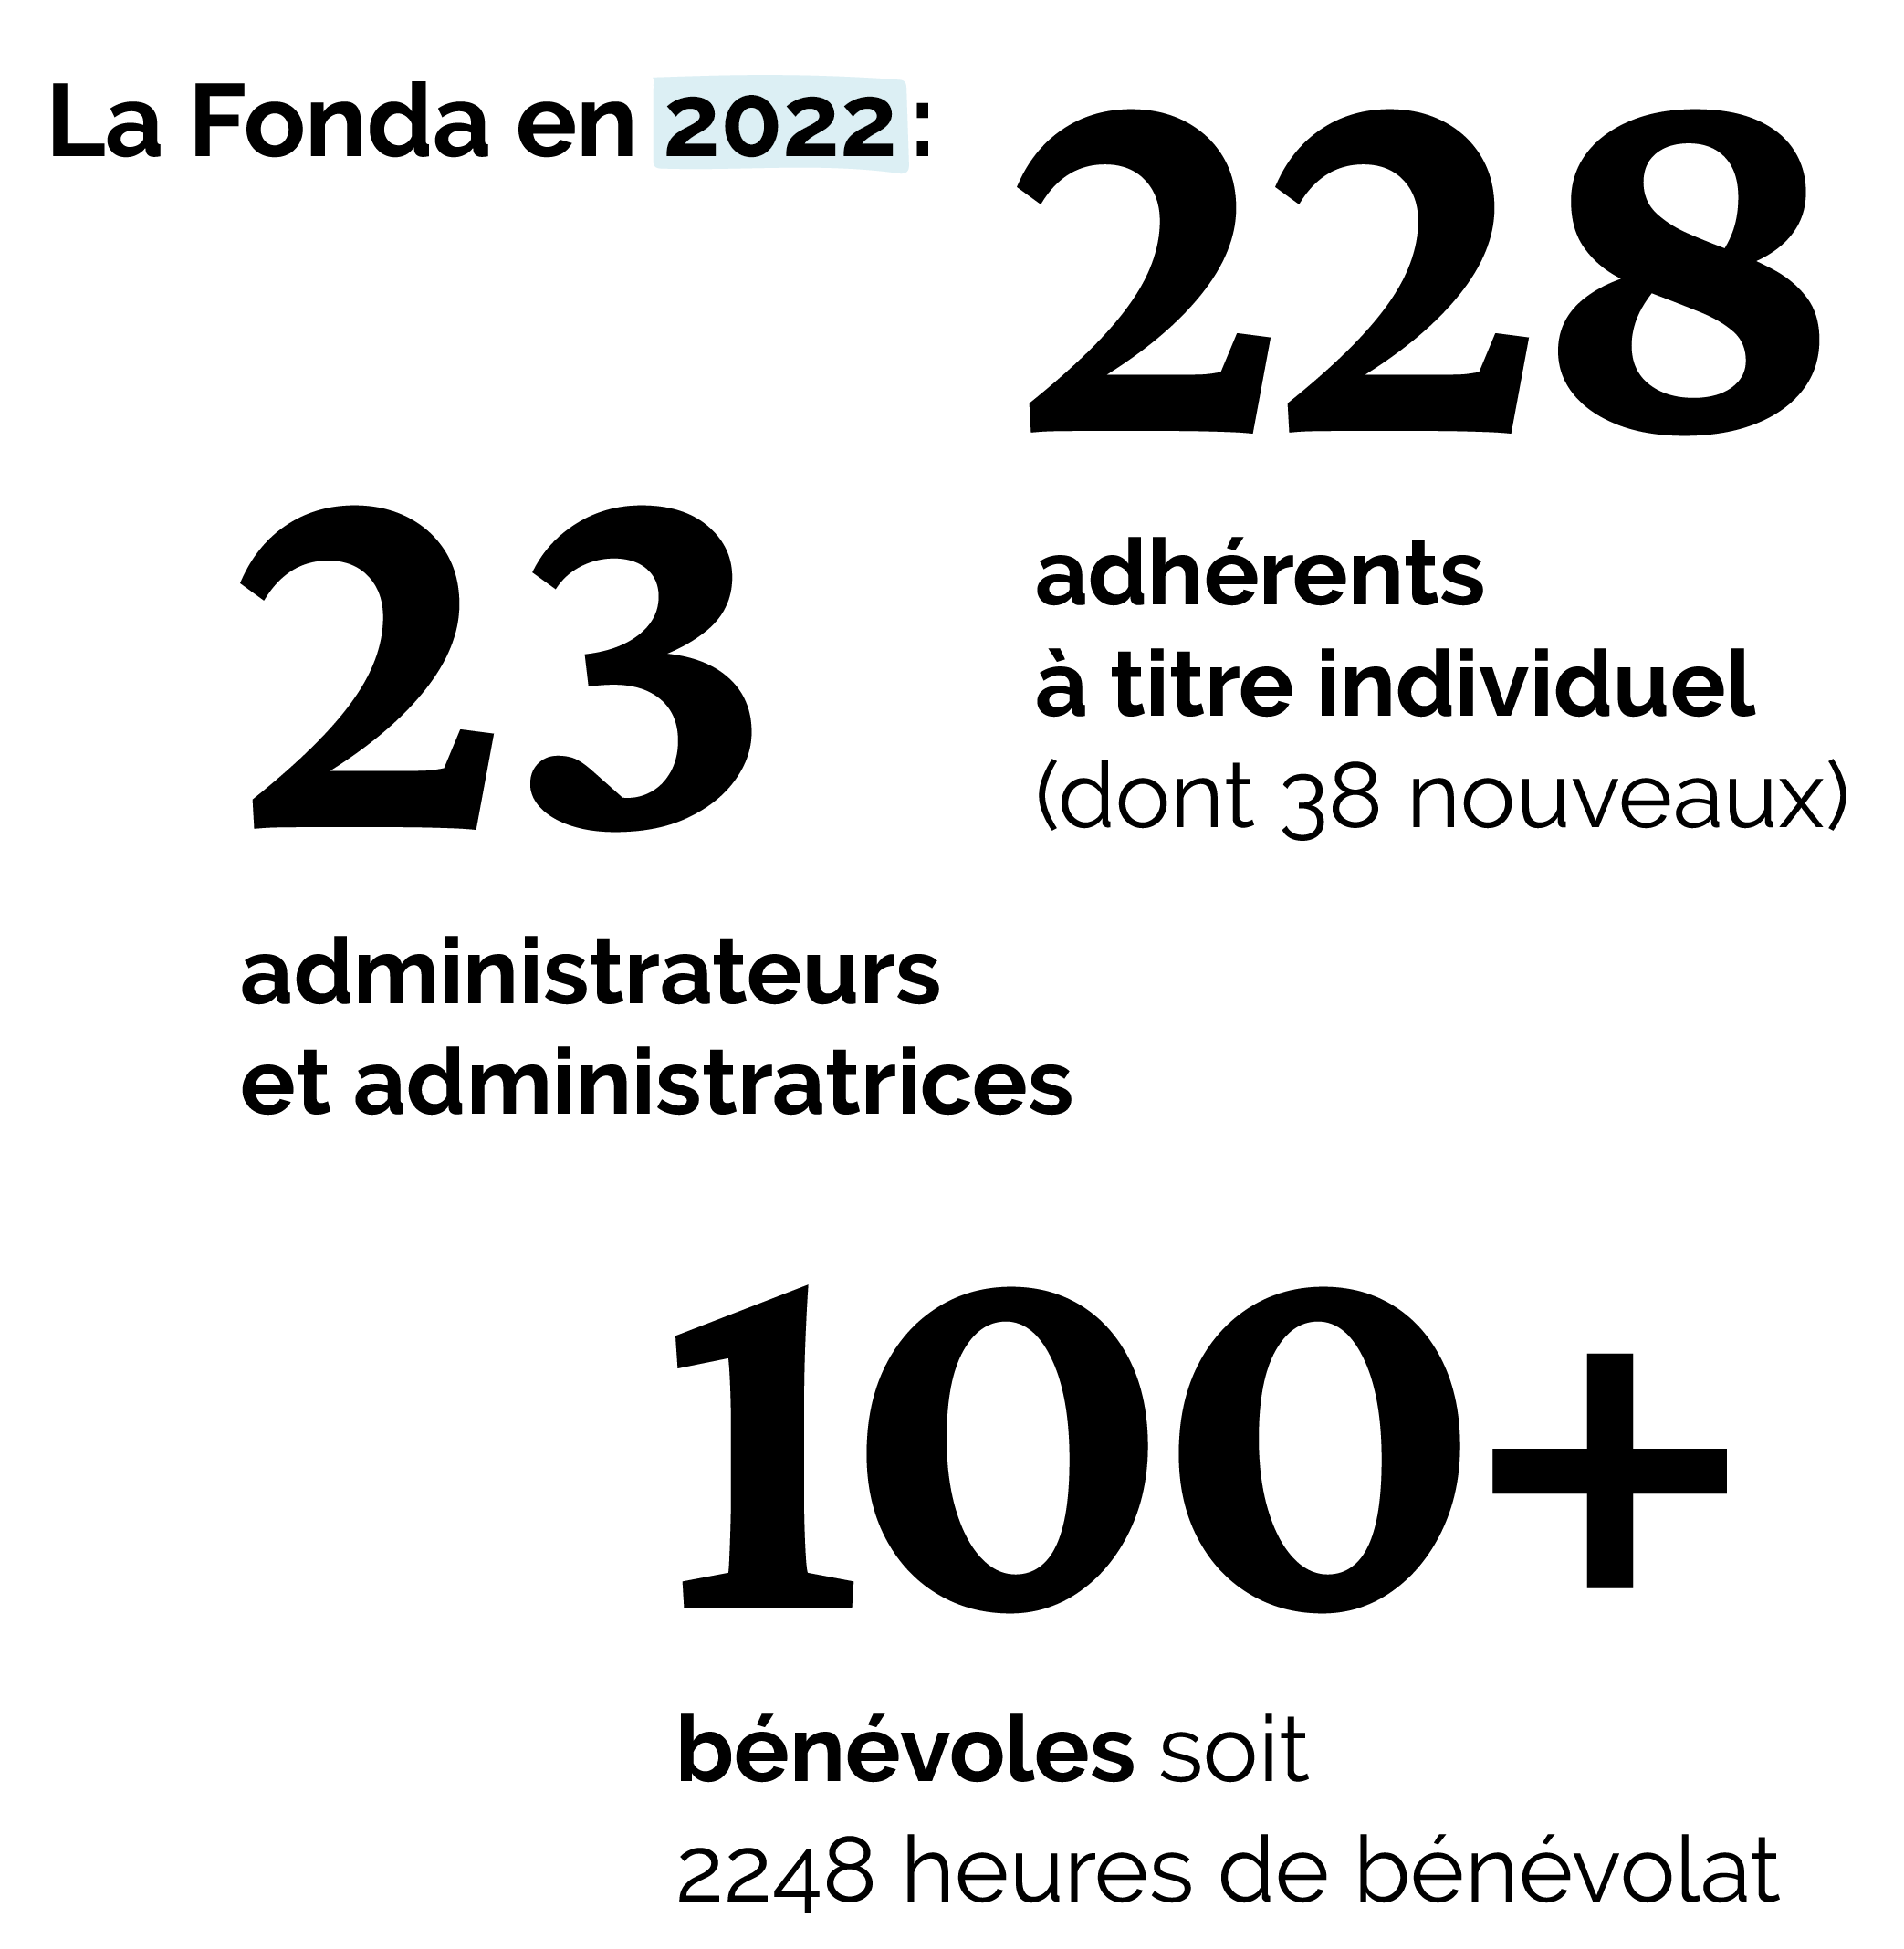 Chiffres de la communauté Fonda 2022 © Anna Maheu / La Fonda